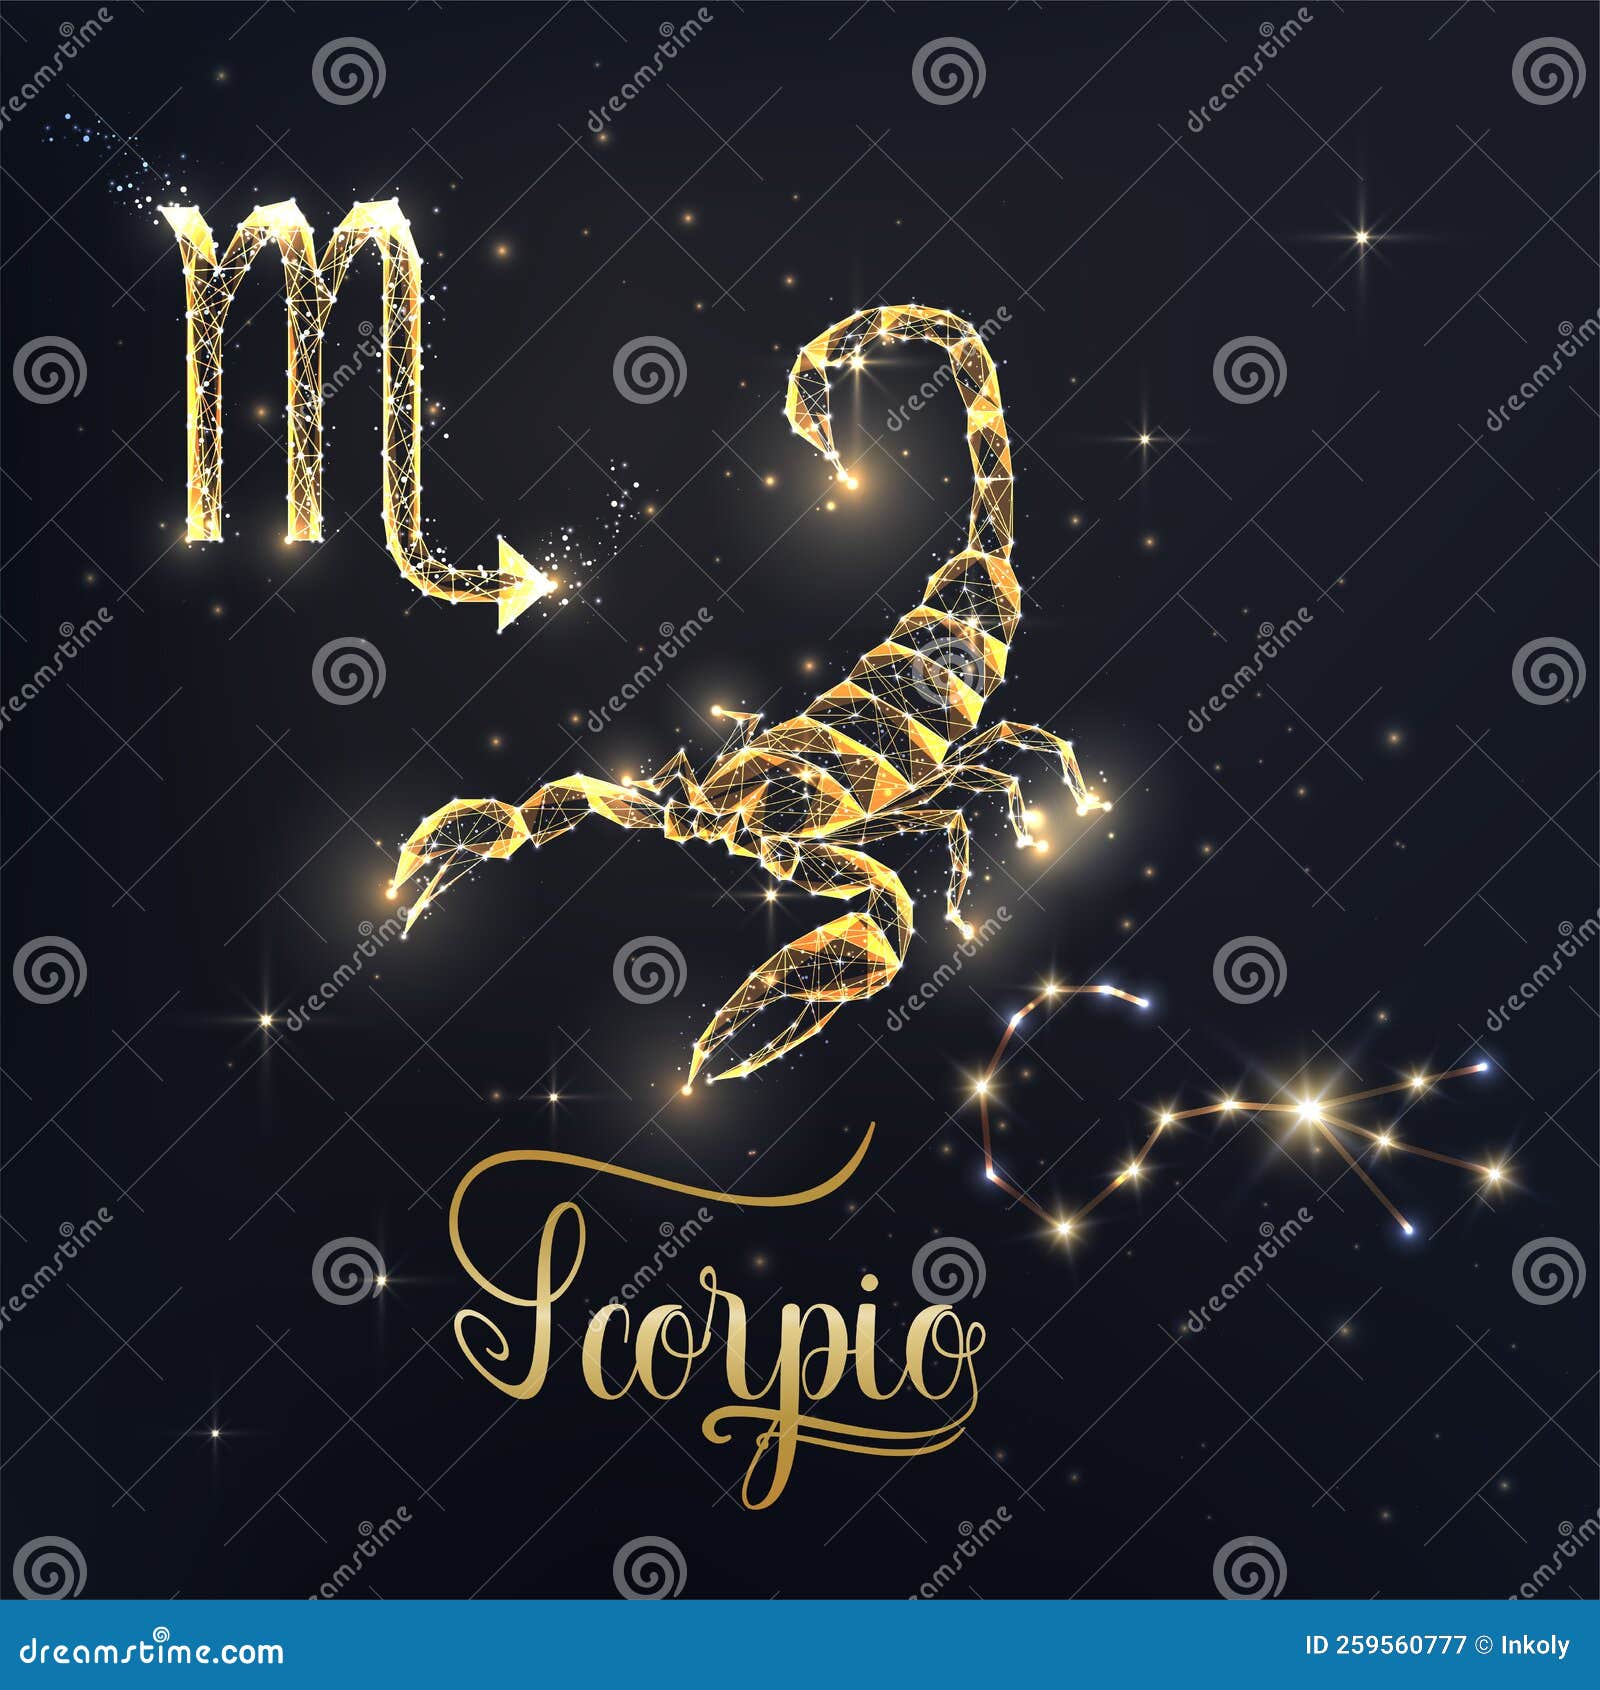 Gold Scorpio Zodiac Sign Poster with Scorpion Zodiac Figure, Symbol ...